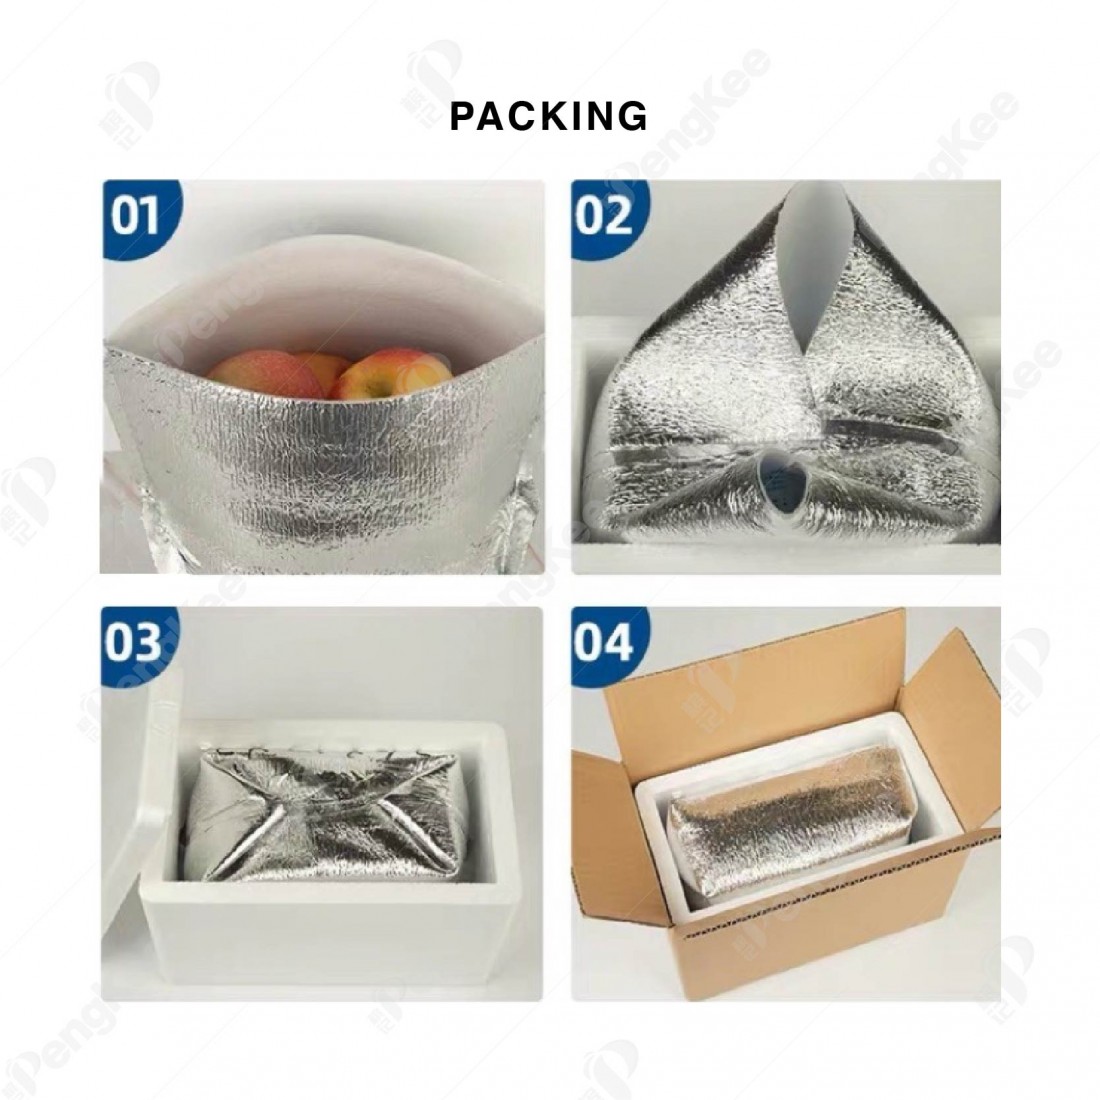 ALUMINUM FOIL PEARL COTTON INSULATION BAG (L26 * W26 * H37CM +3MM) 铝箱珍珠保温袋 (20'S)